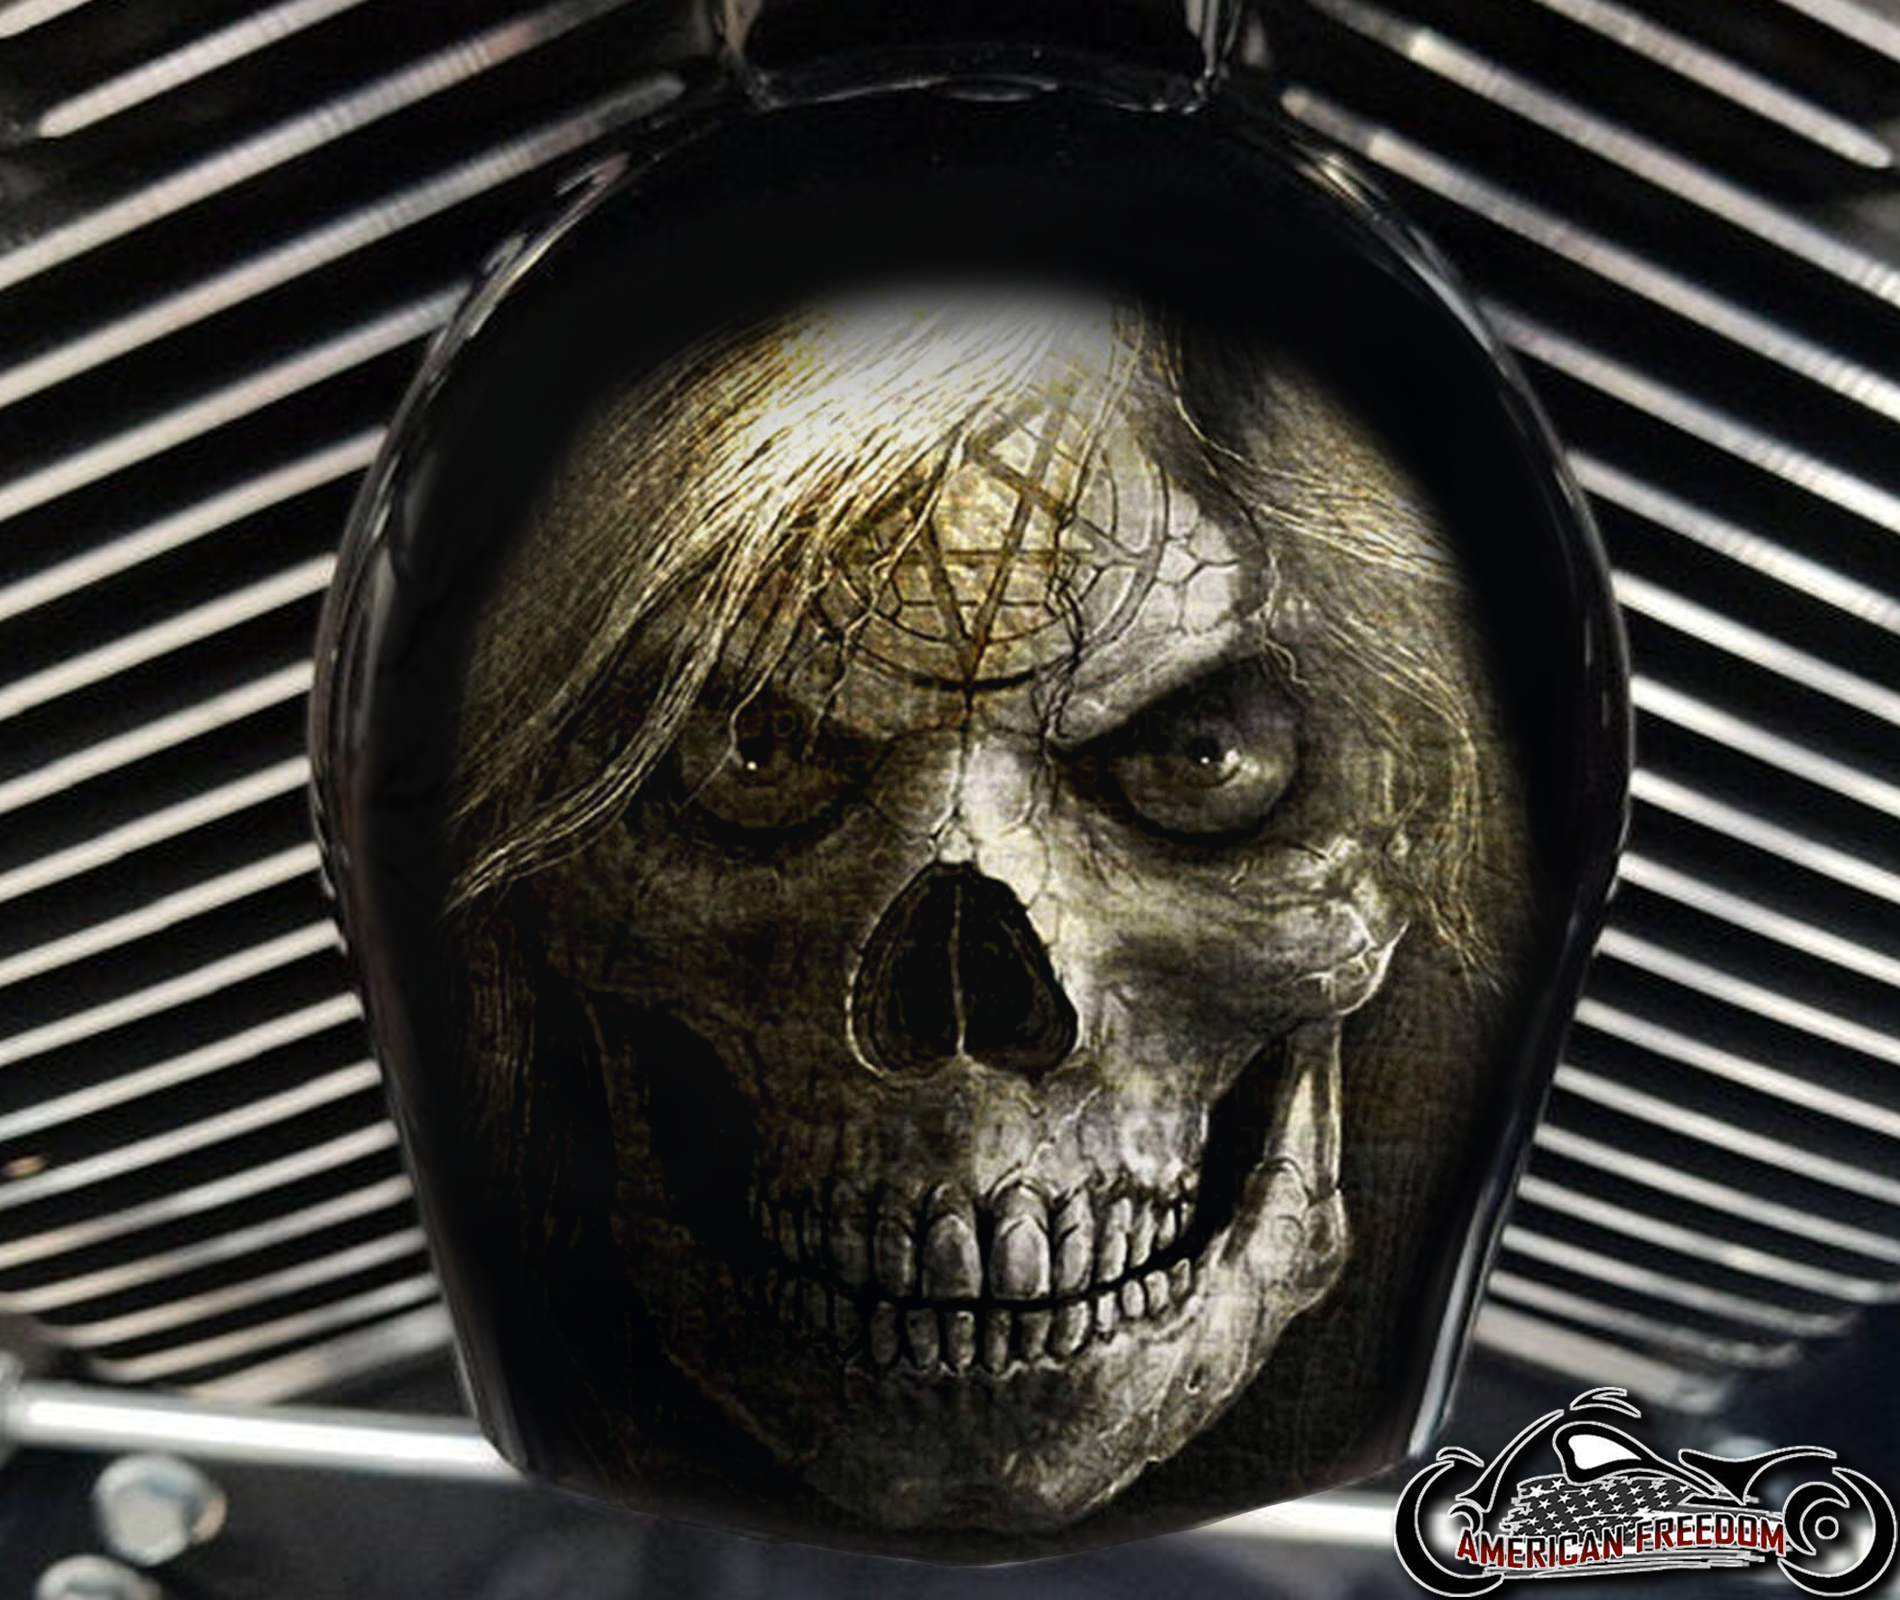 Custom Horn Cover - Skull With Hair